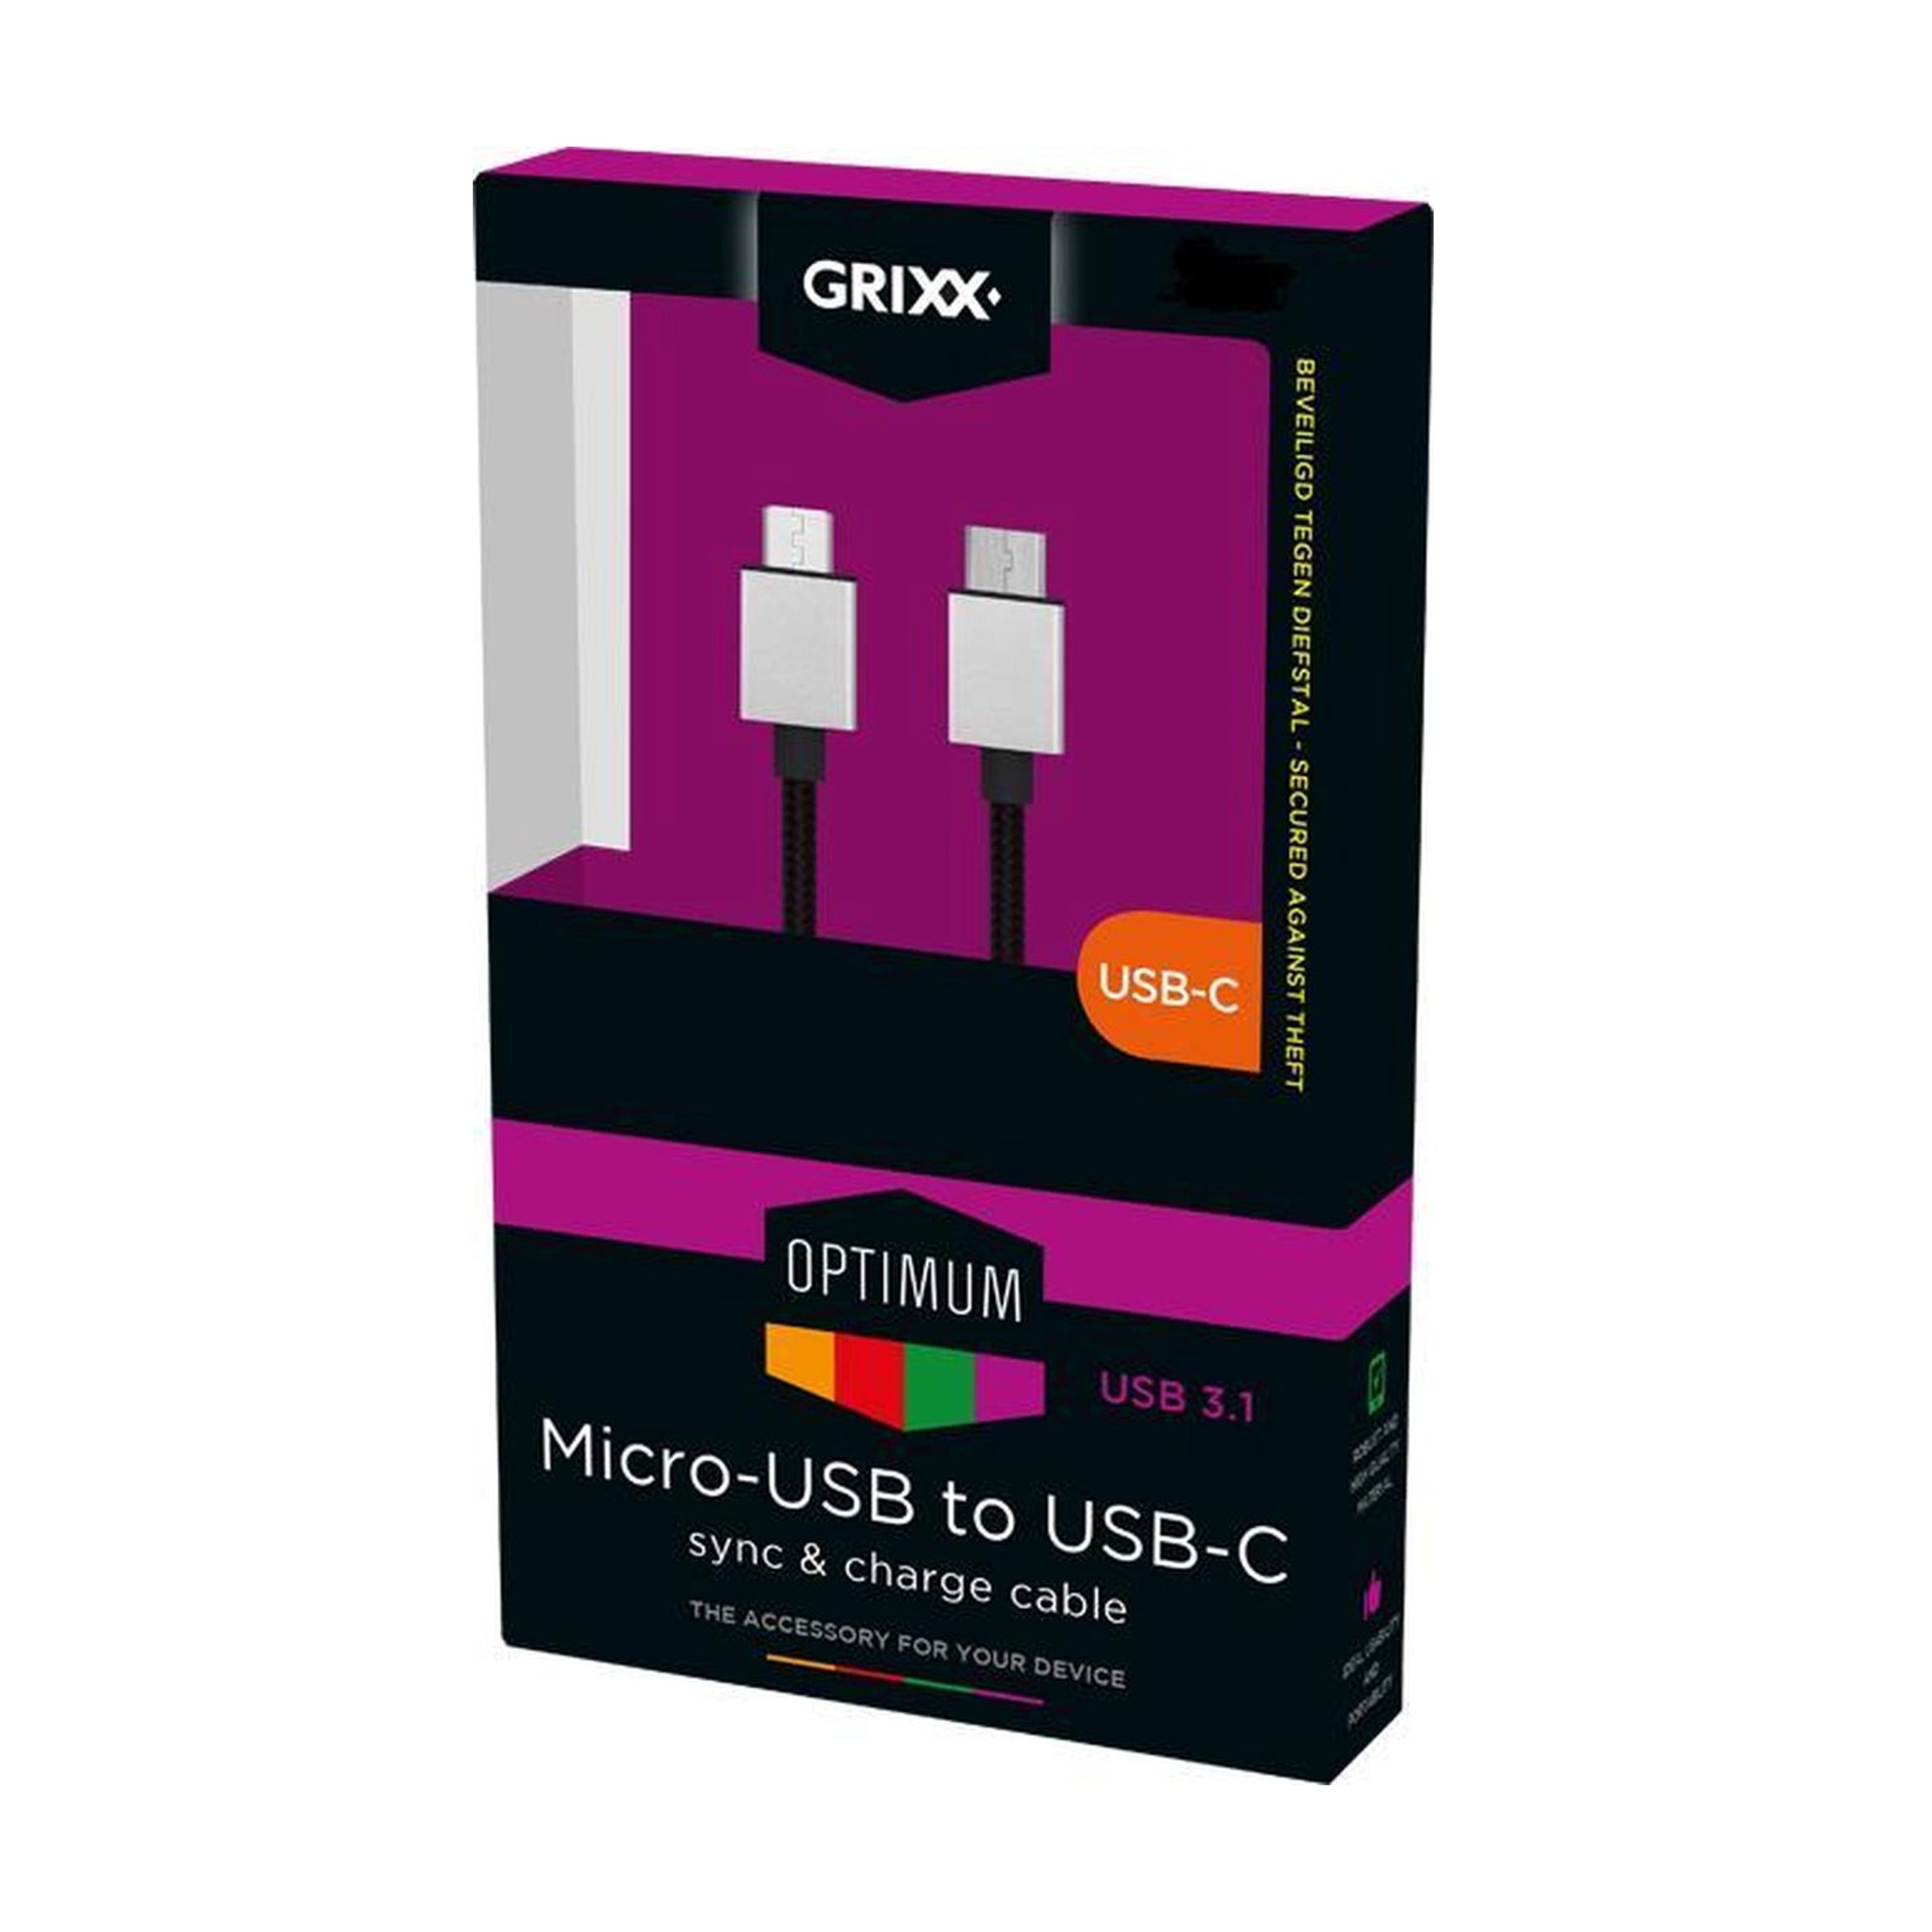 Grixx GROCACMUSBFBK03 USB-Kabel, Micro-USB, USB 3.0 Typ A (300 cm), USB 3.1, bis zu 480 Mbit/s, 3.0 Meter, Nylonmantel, Schwarz